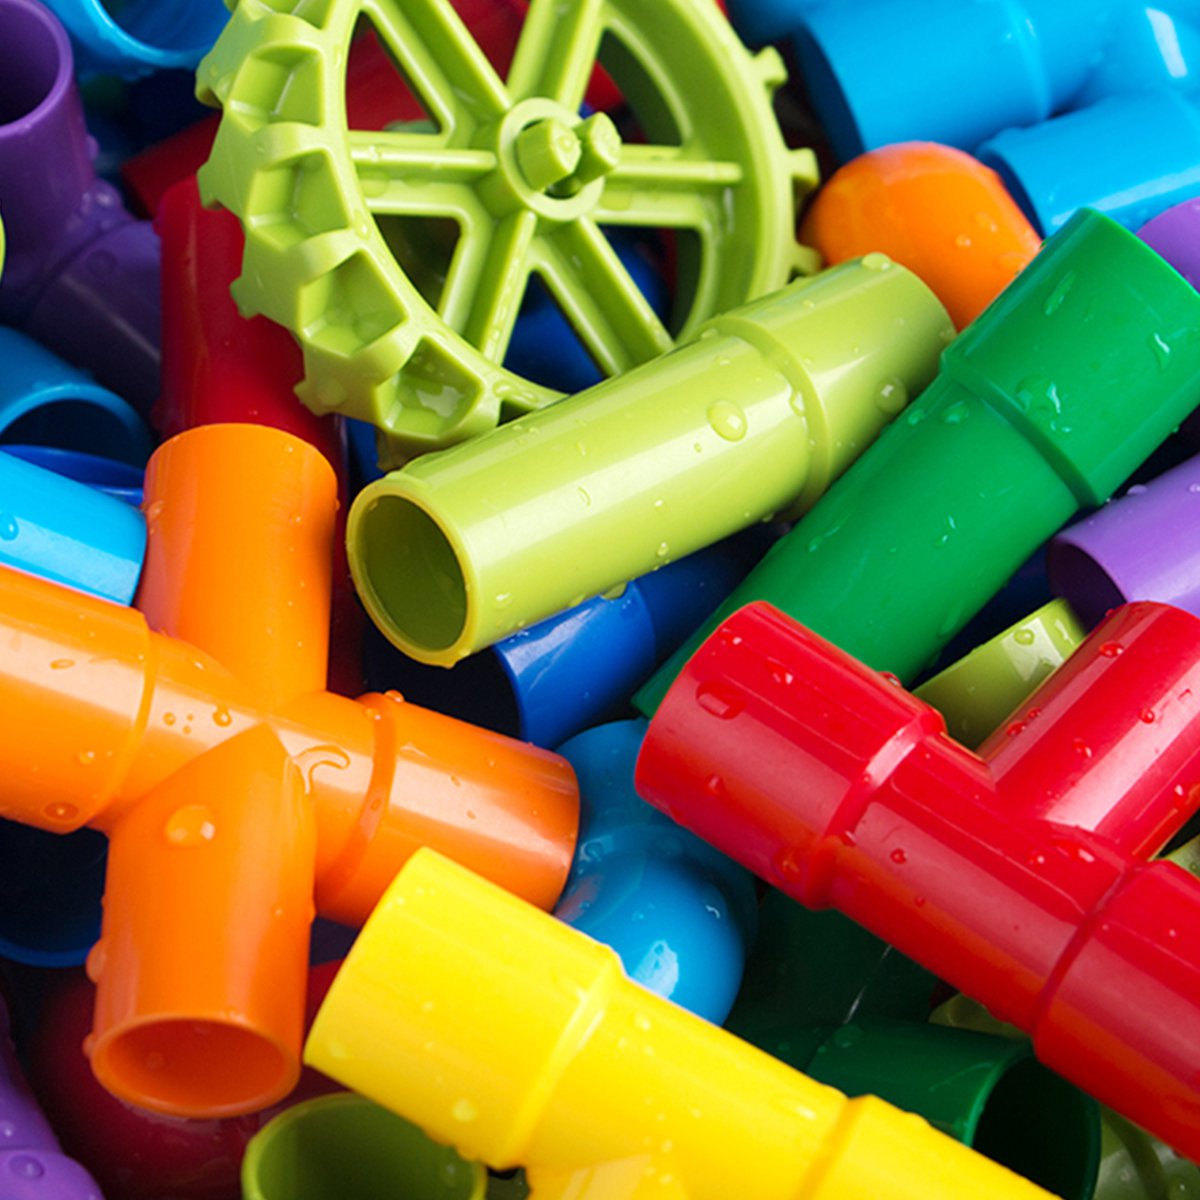 水管道积木塑料拼装拼插益智男孩女孩玩具72件 3